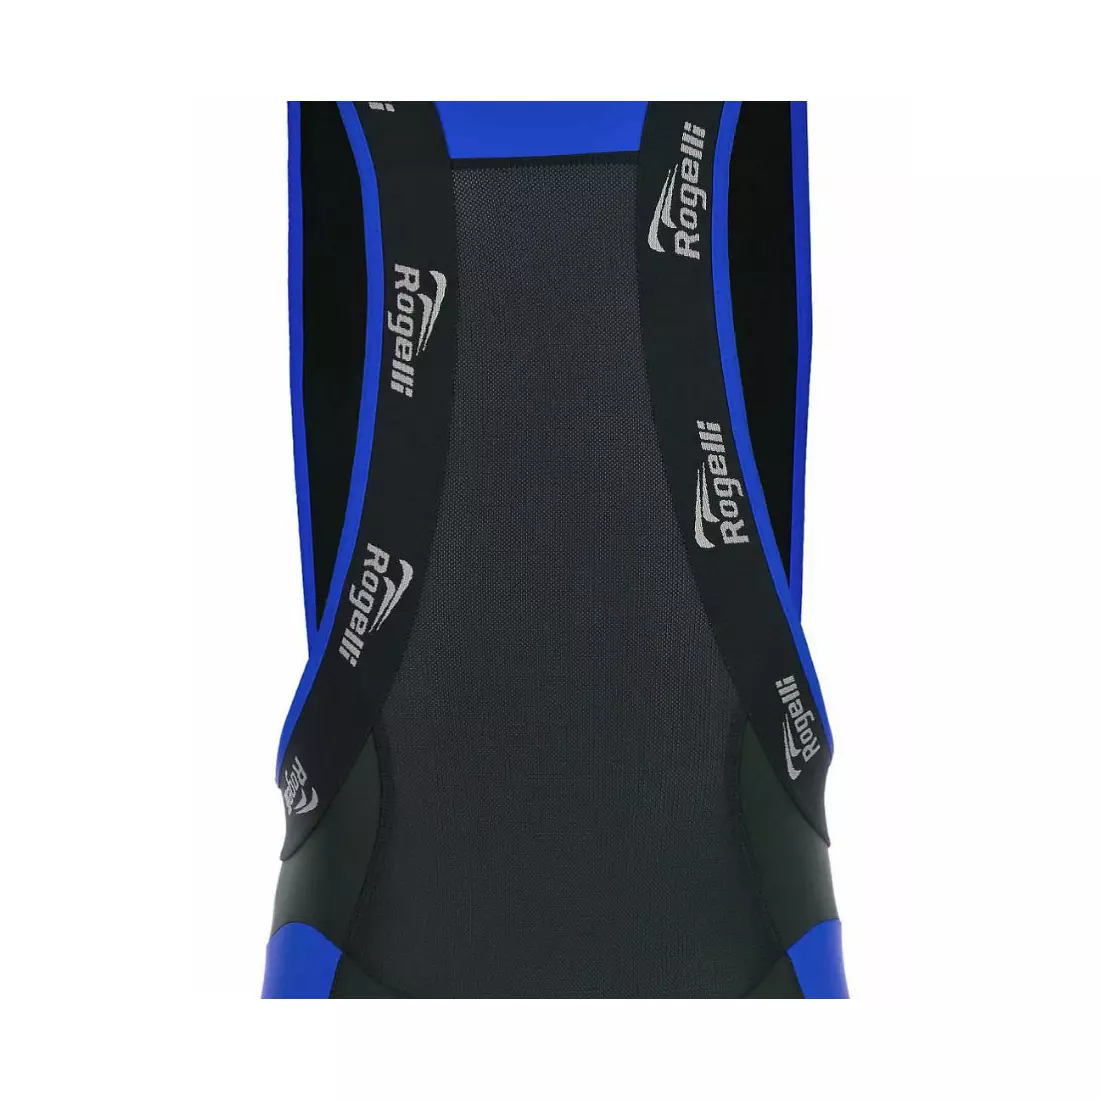 ROGELLI PORCARI - men's bib shorts, color: black and blue